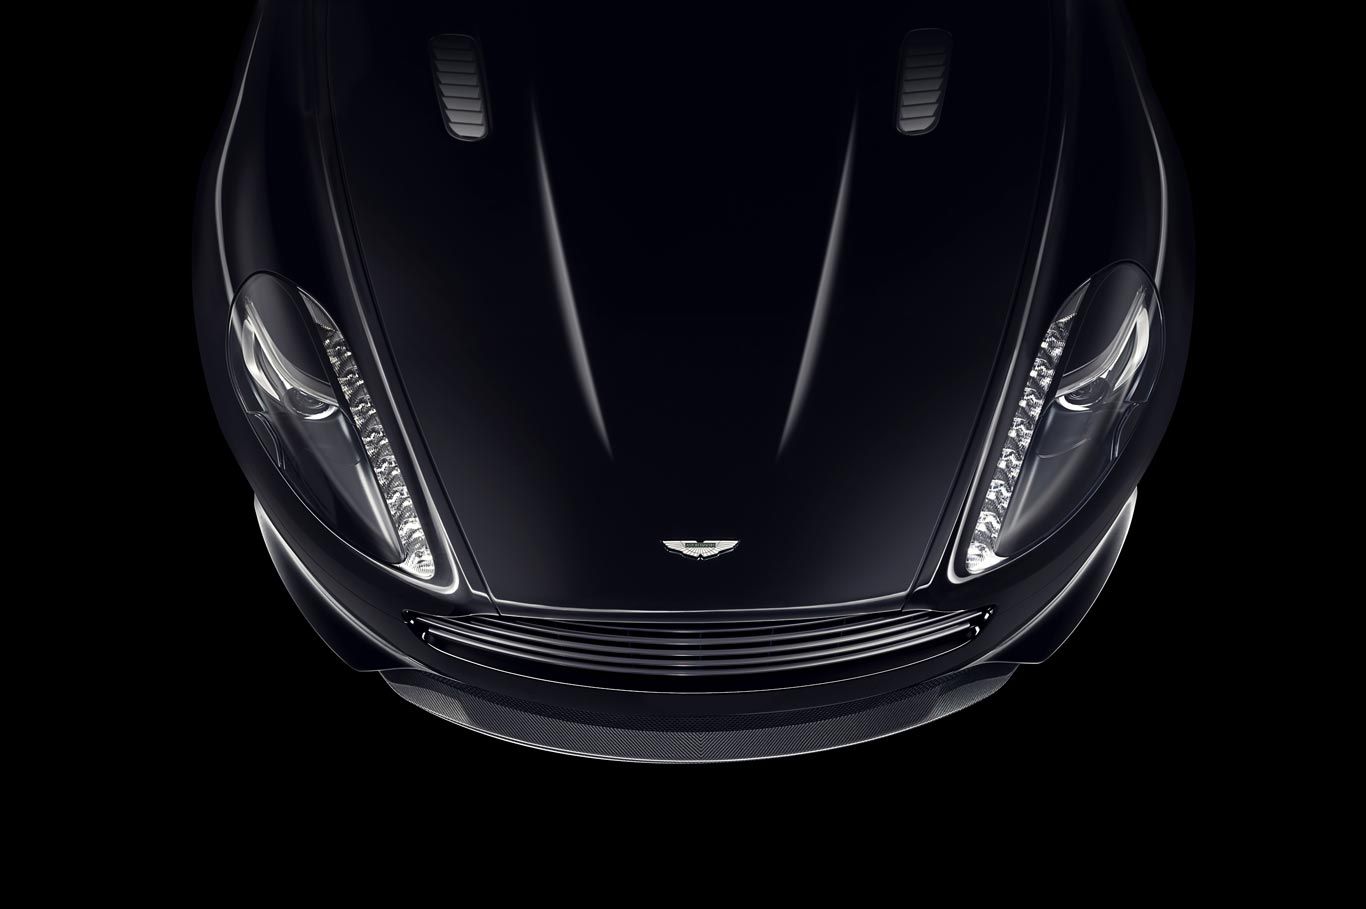 2015 Aston Martin DB9 Carbon Black & Carbon White